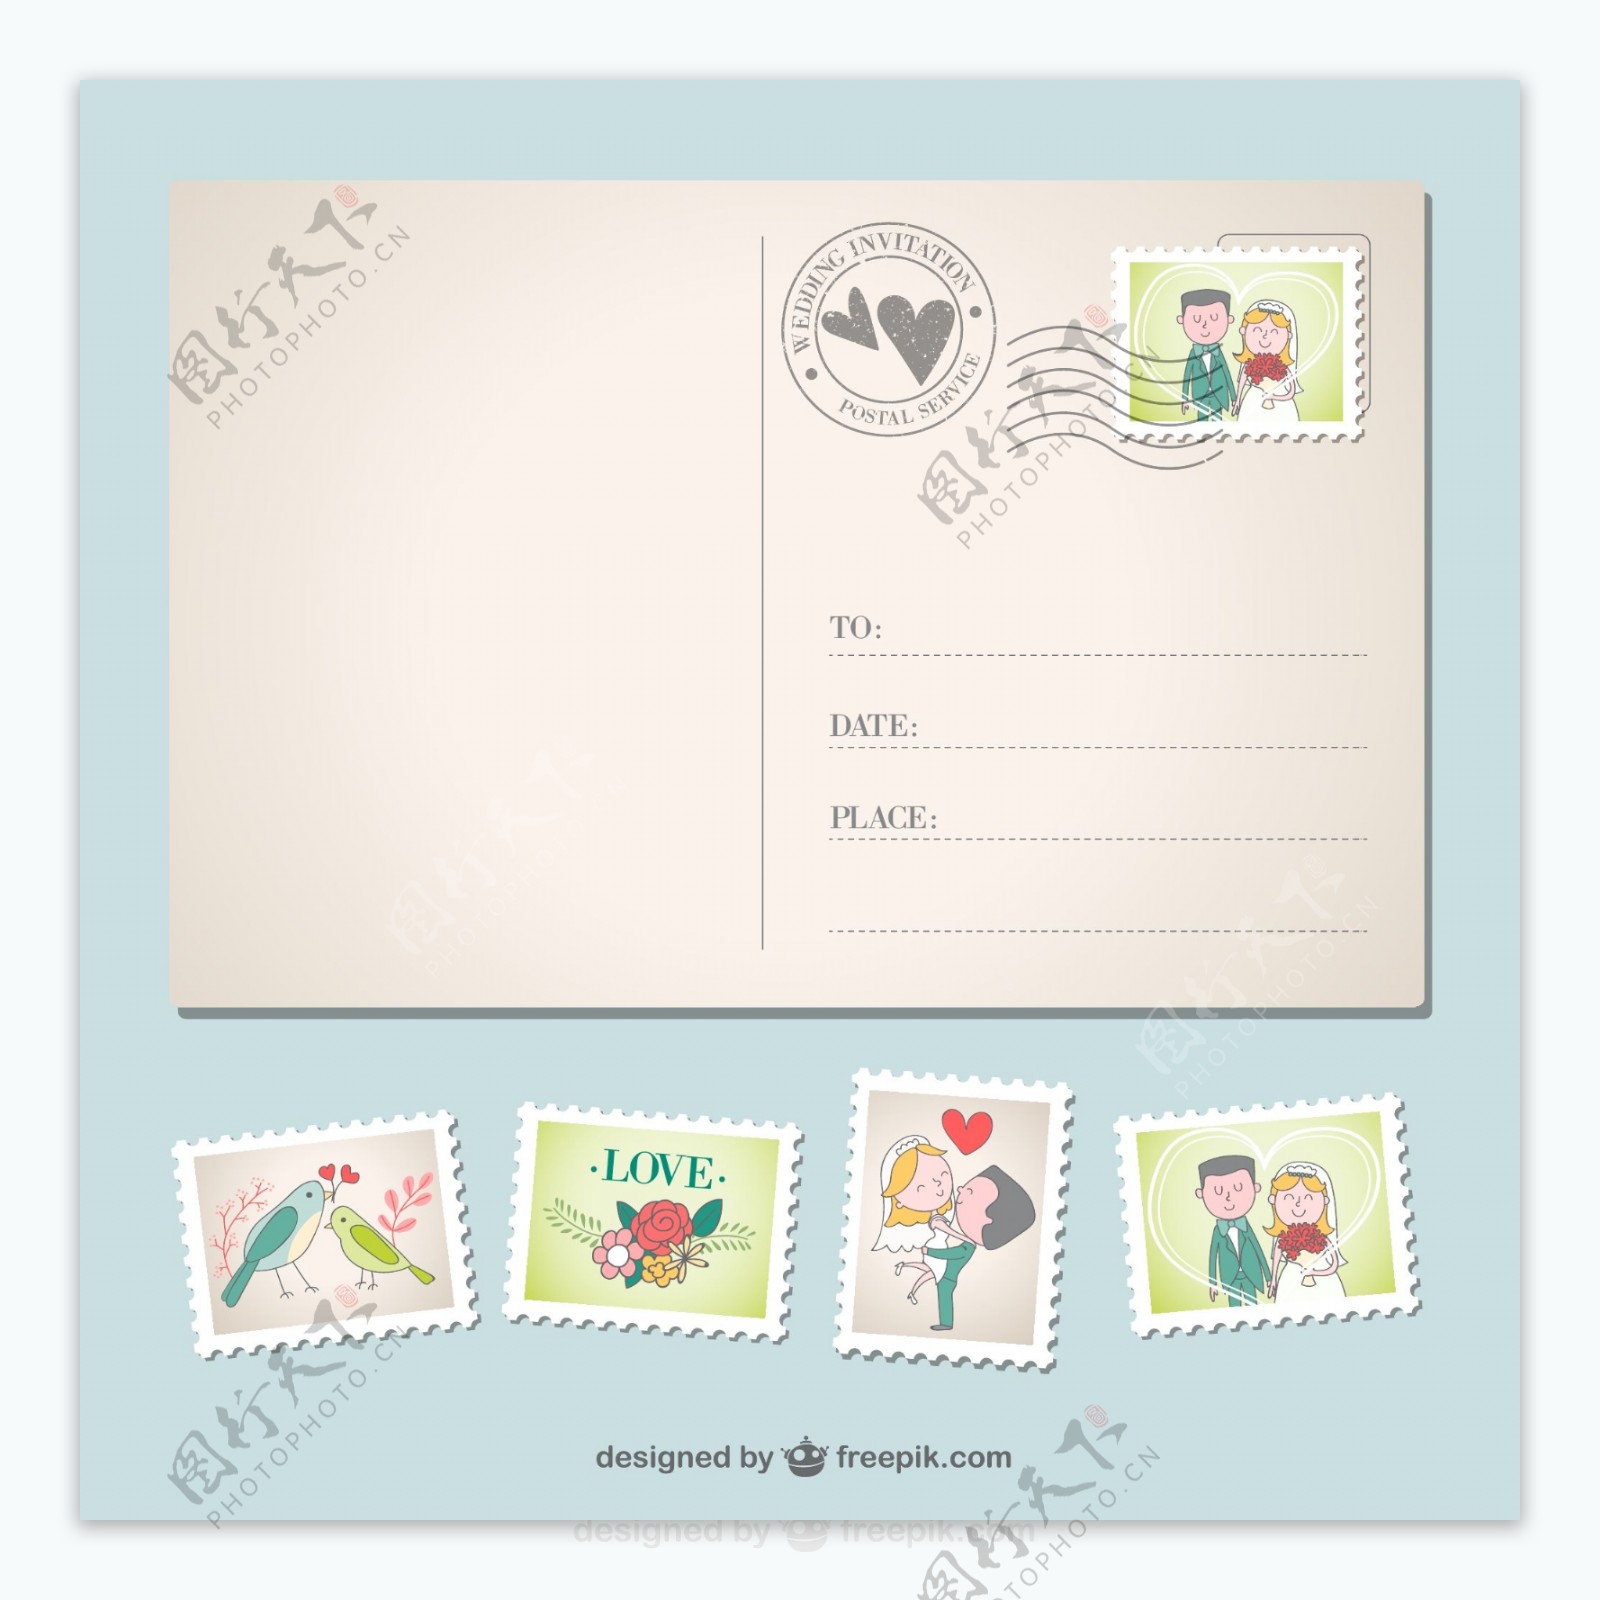 婚礼邀请明信片与邮票设计矢量素材.